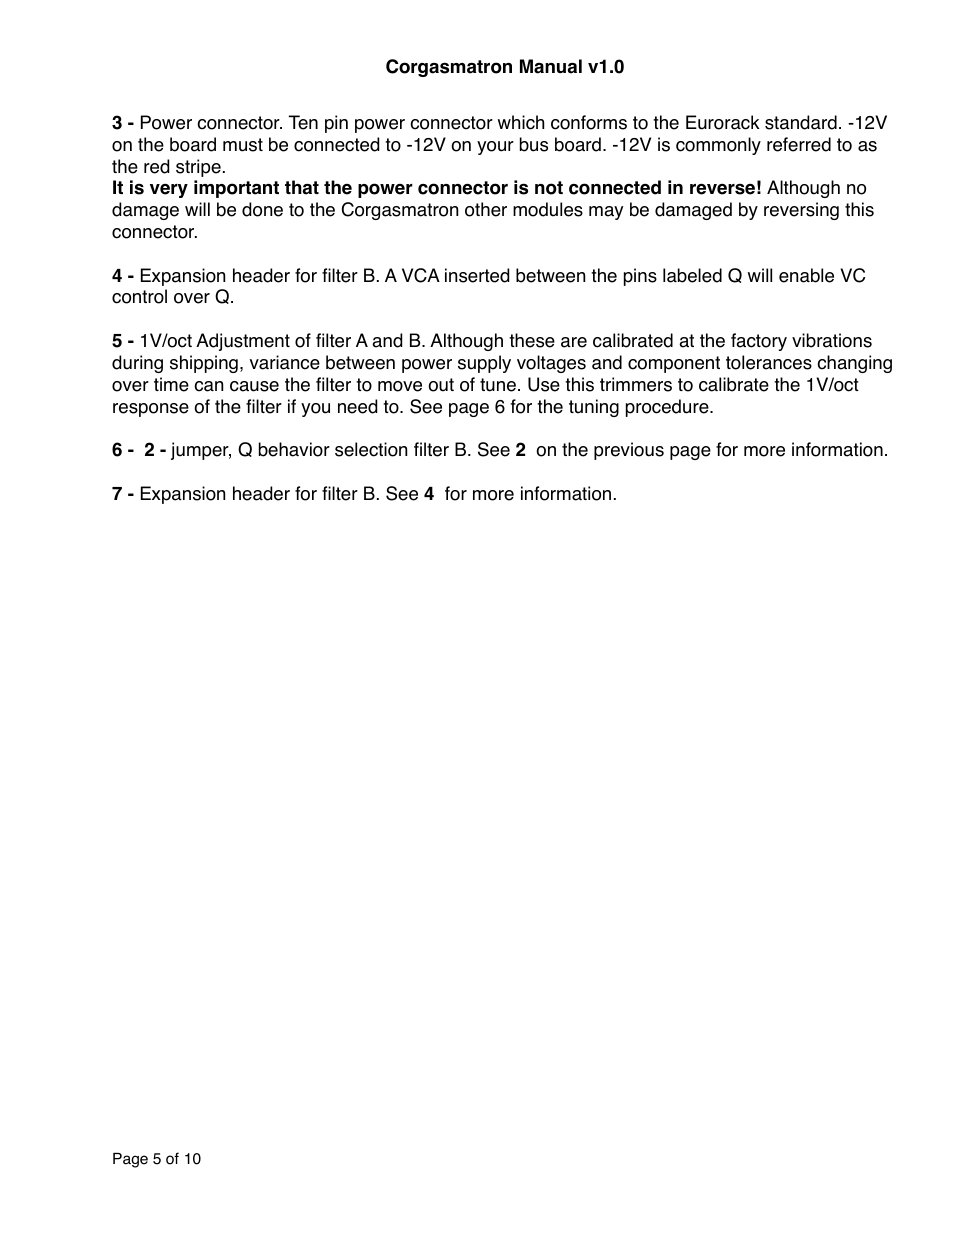 Intellijel Corgasmatron (draft) User Manual | Page 5 / 10